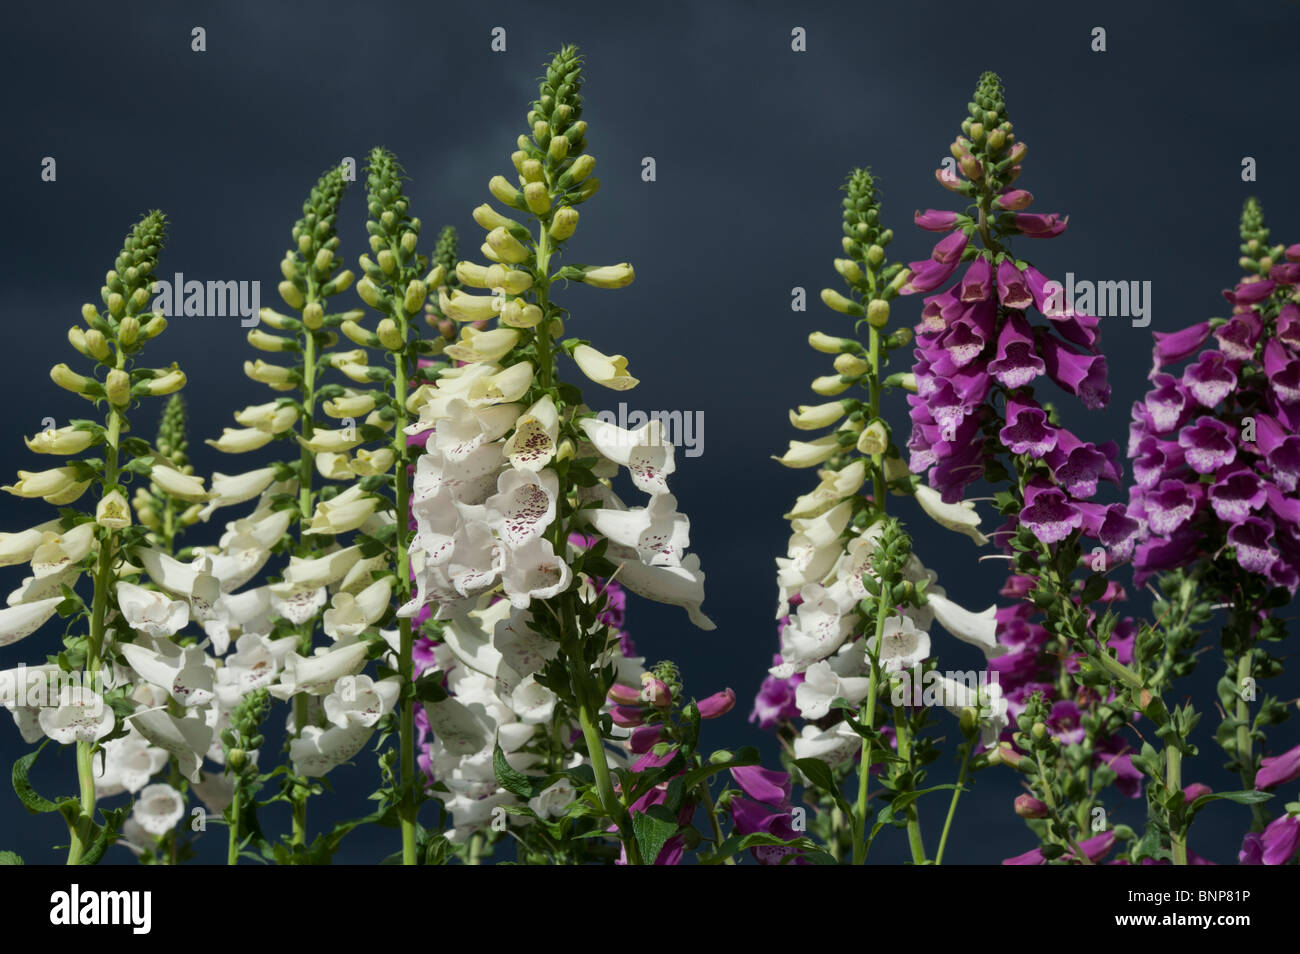 Digitalis 'Dalmatinischen weiß' und 'Dalmatinische Purple' Fingerhut Blumen gegen dunkle stürmische Himmel Stockfoto